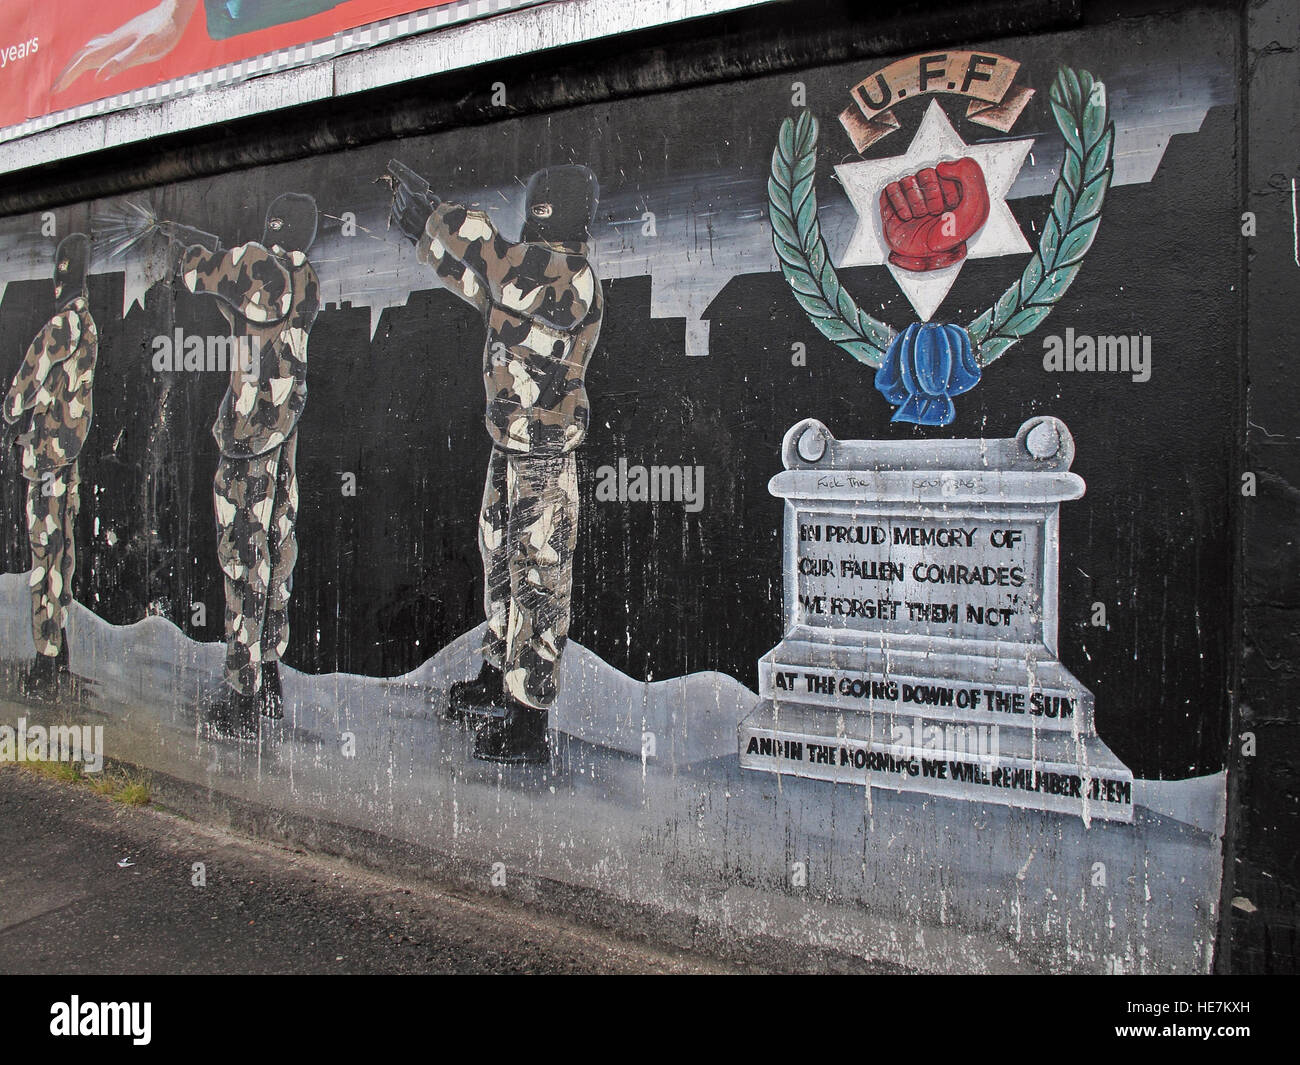 UFF syndicaliste fresque à la mémoire, au large de Shankill Road West Belfast, Irlande du Nord, Royaume-Uni Banque D'Images